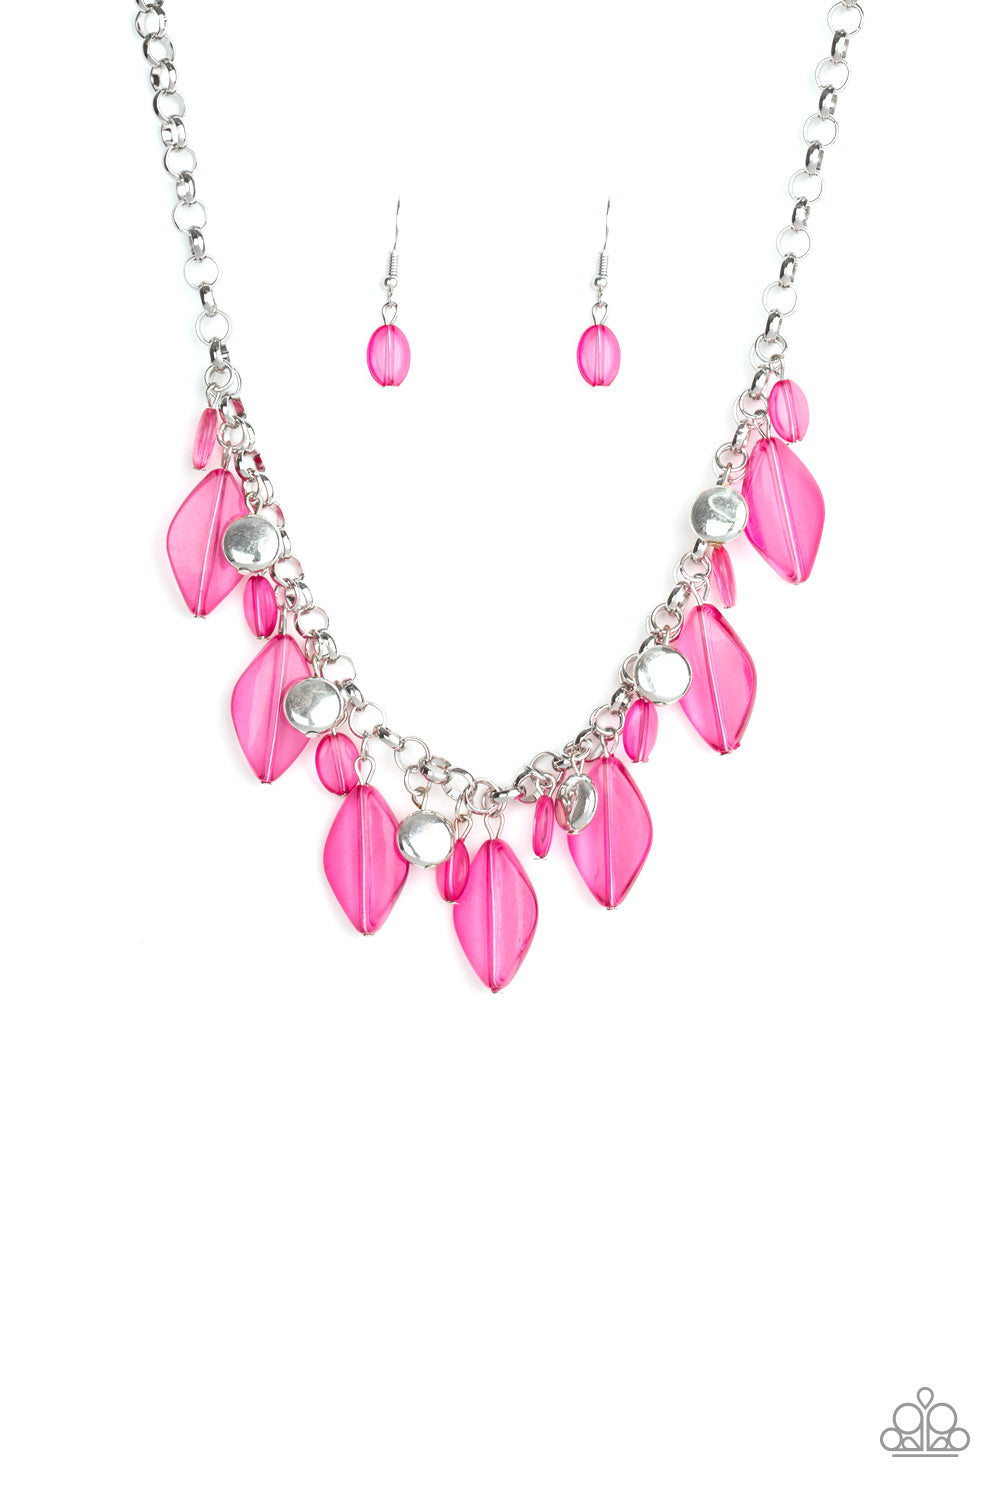 Malibu Ice Pink Paparazzi Necklaces Cashmere Pink Jewels - Cashmere Pink Jewels & Accessories, Cashmere Pink Jewels & Accessories - Paparazzi